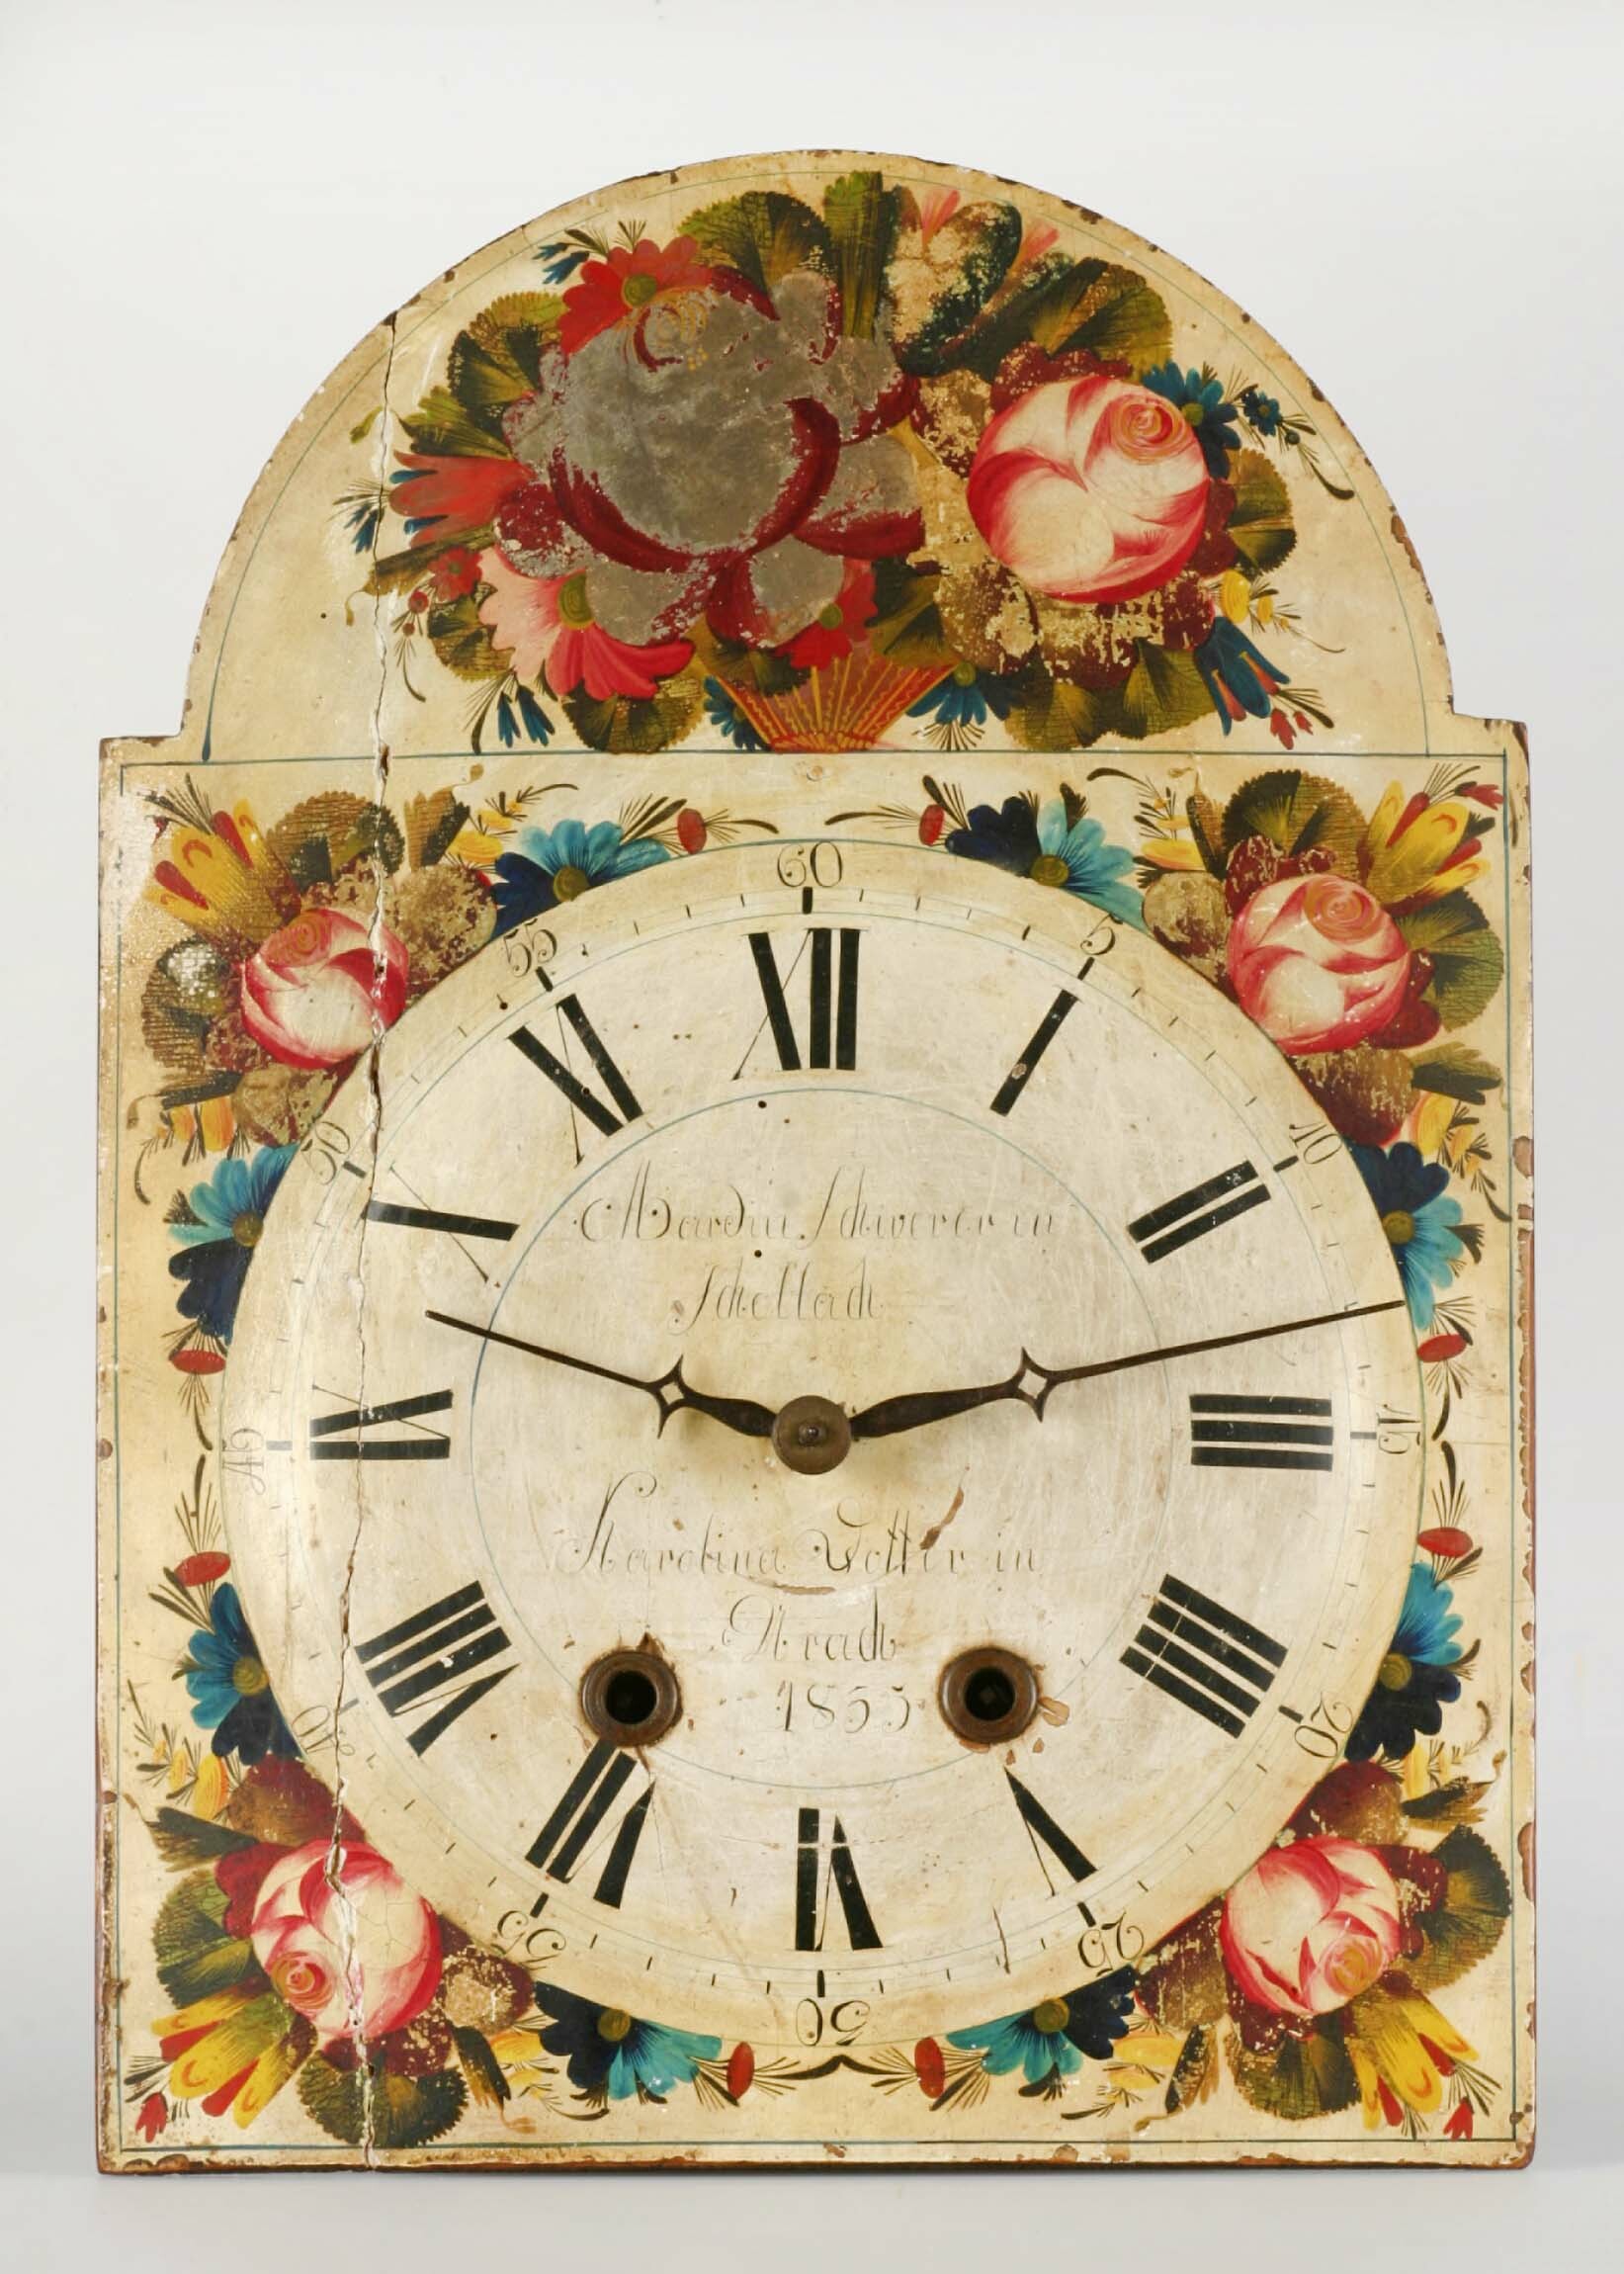 Lackschilduhr, Schwarzwald, 1835 (Deutsches Uhrenmuseum CC BY-SA)